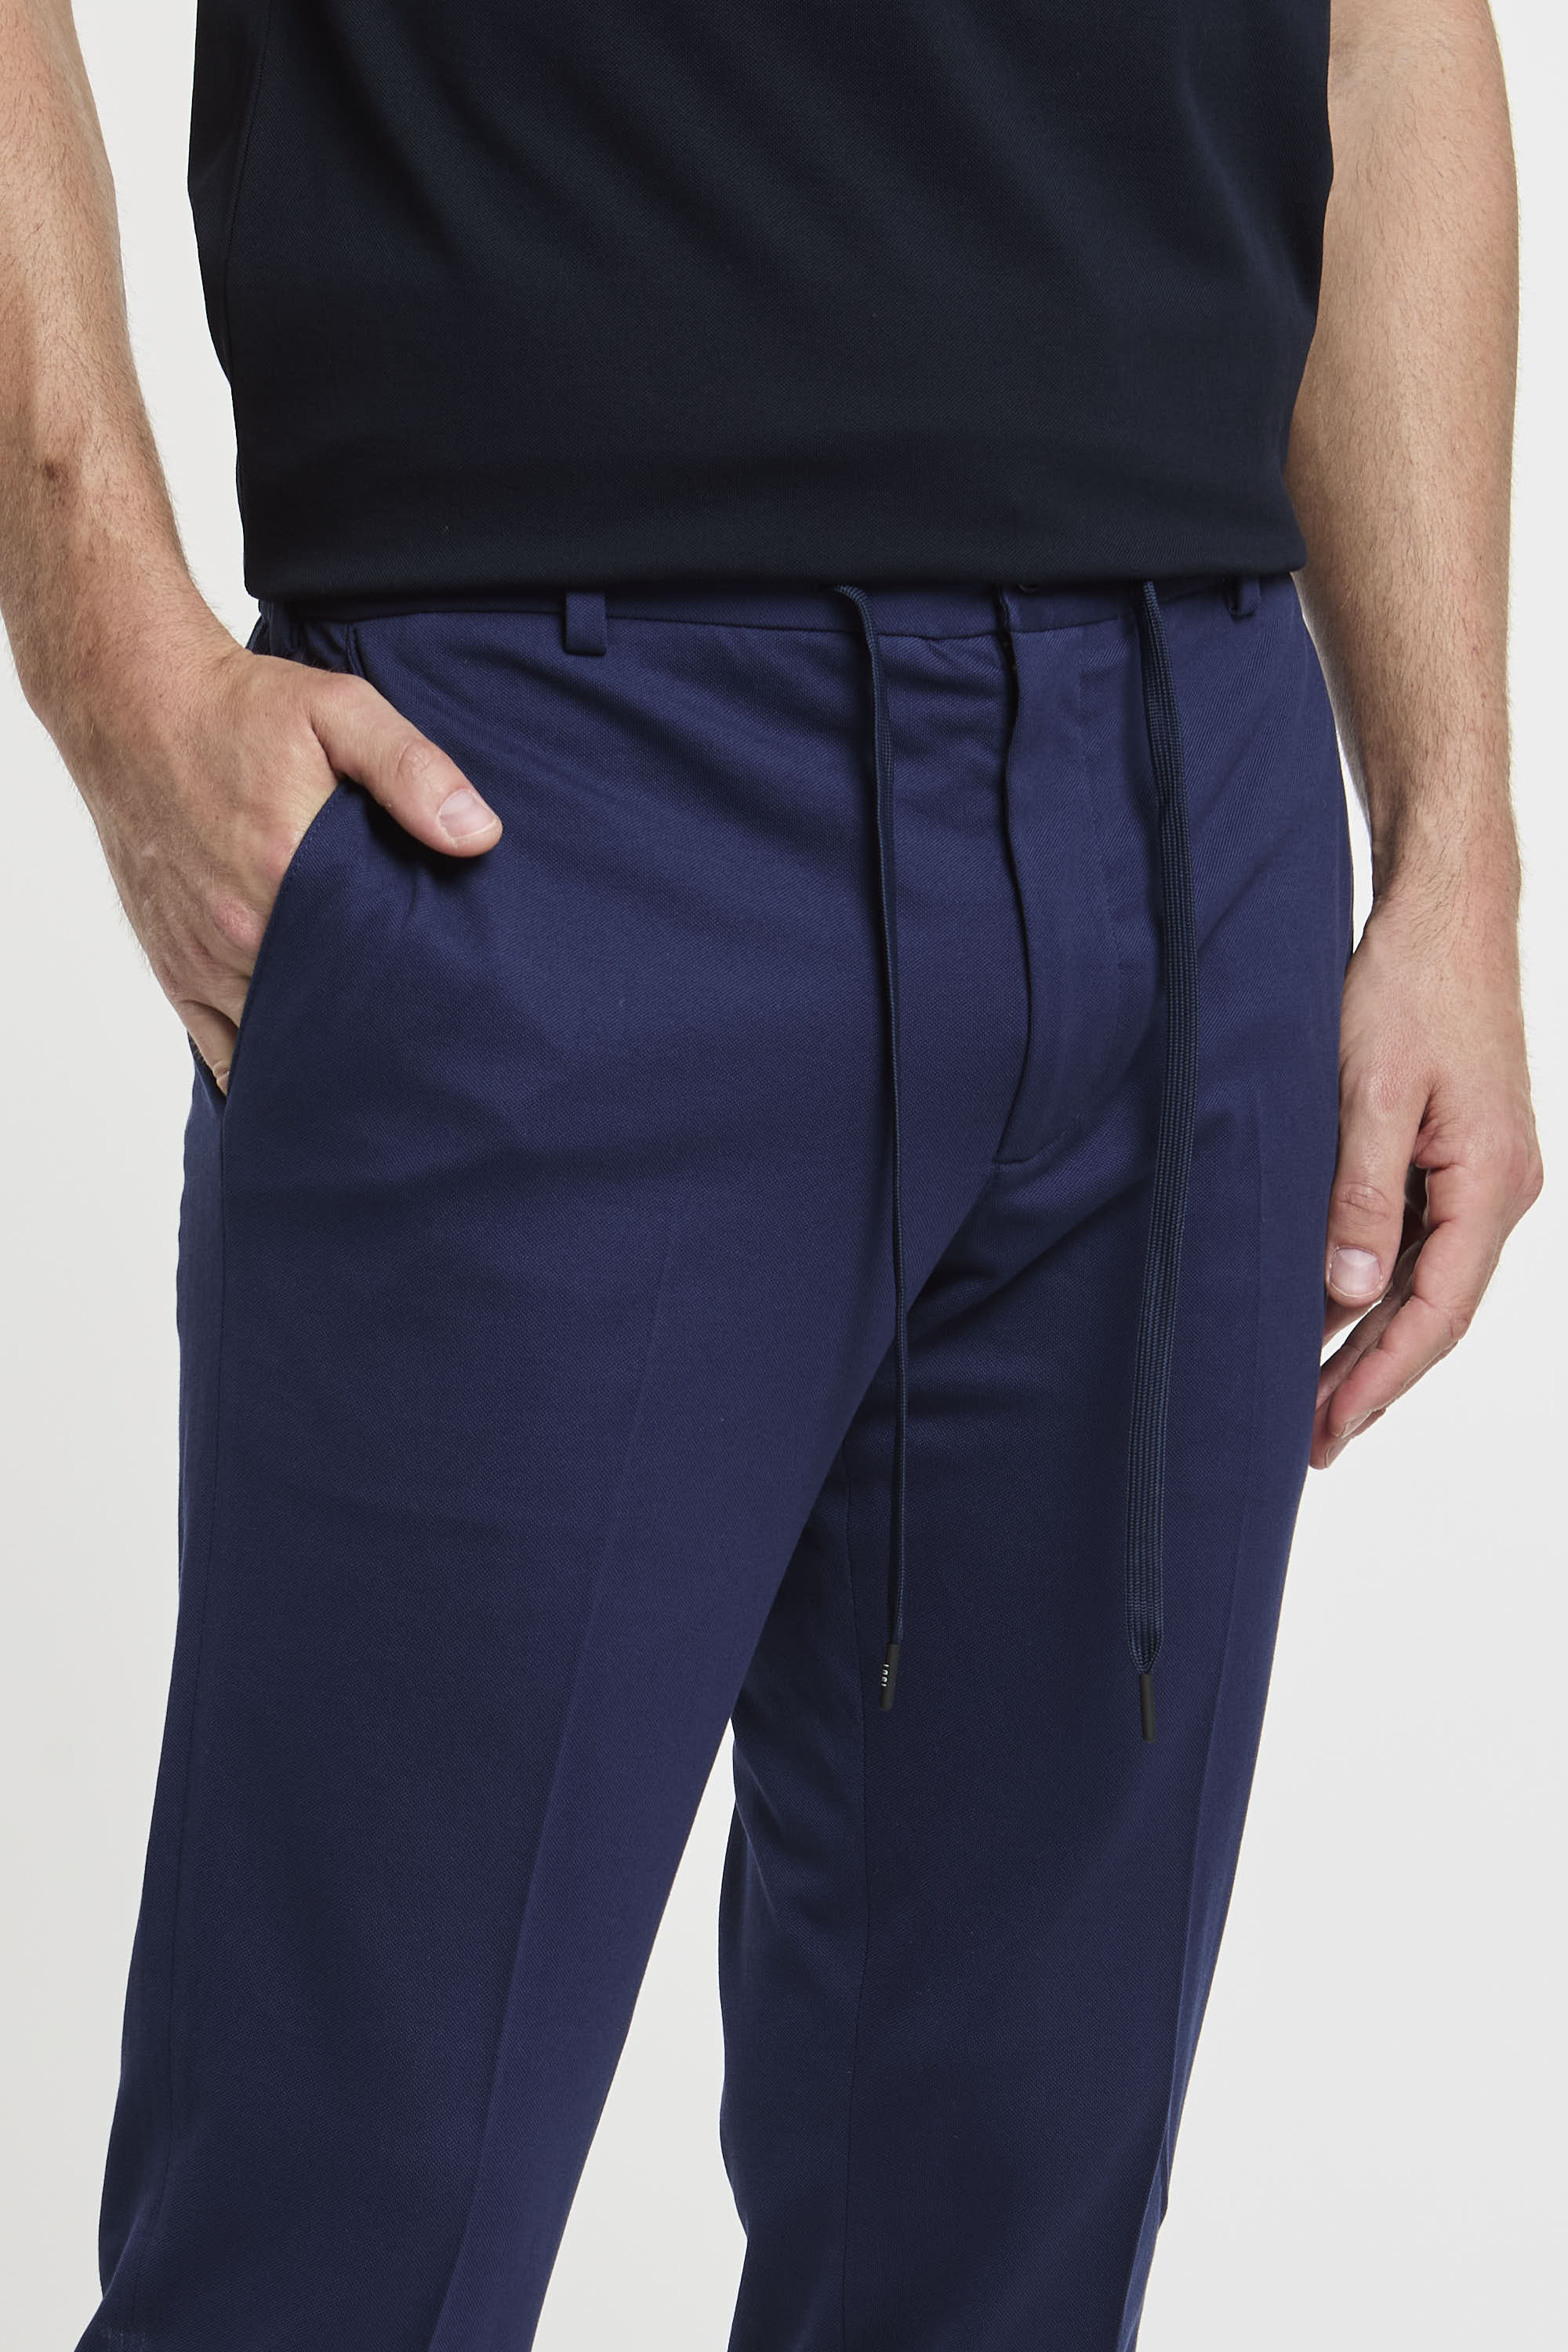 Circolo 1901 Cotton Pants Blue 6502-4